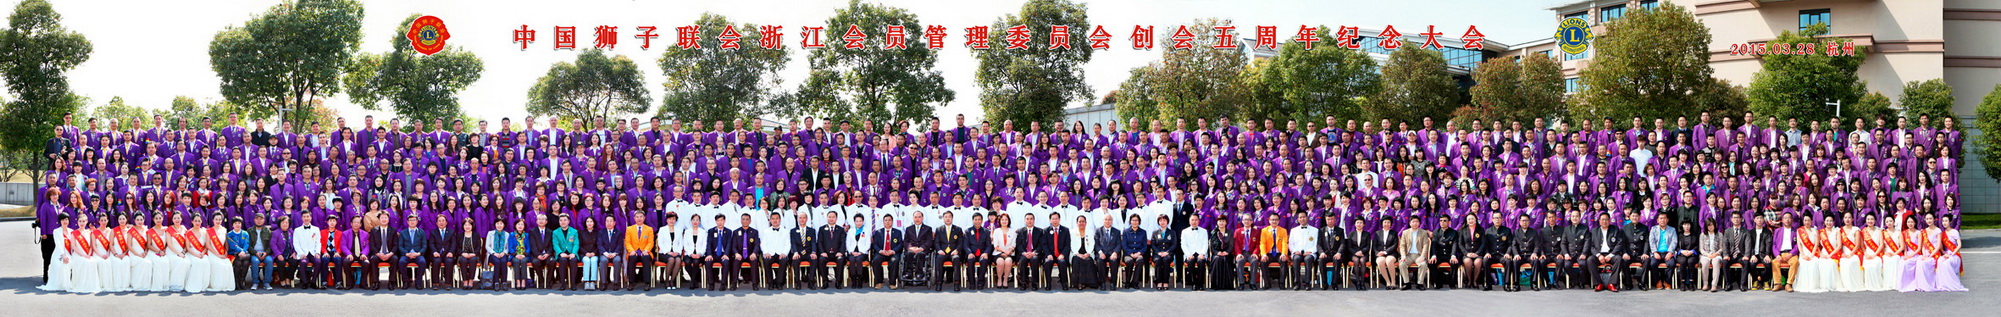 中国狮子联会浙江会员管理委员会创会5周年纪念大会合影